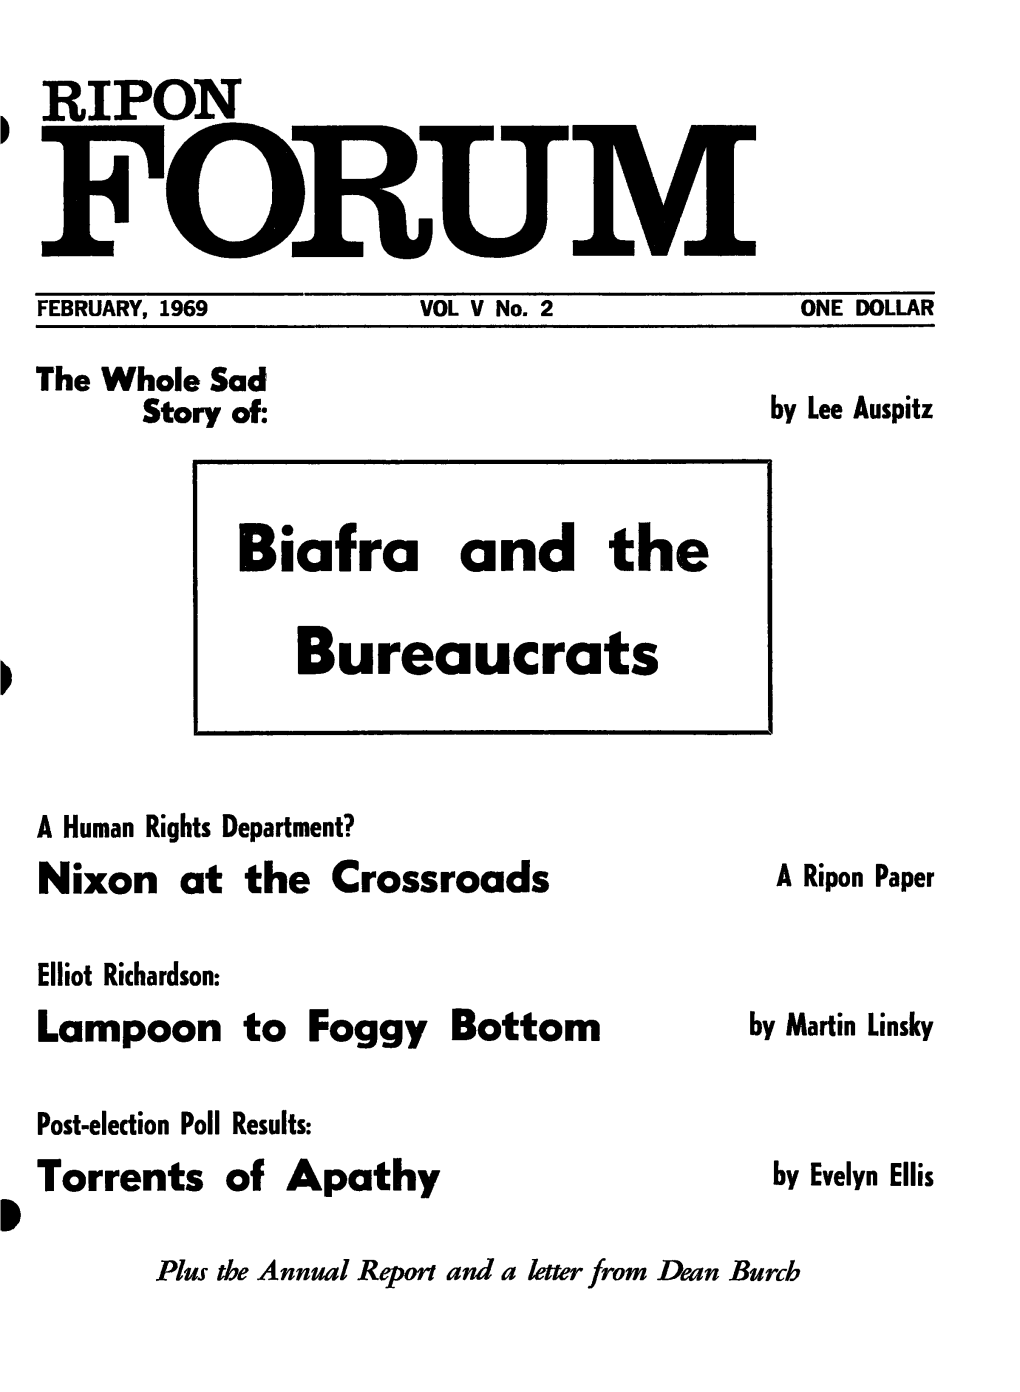 Biafra and the Bureaucrats